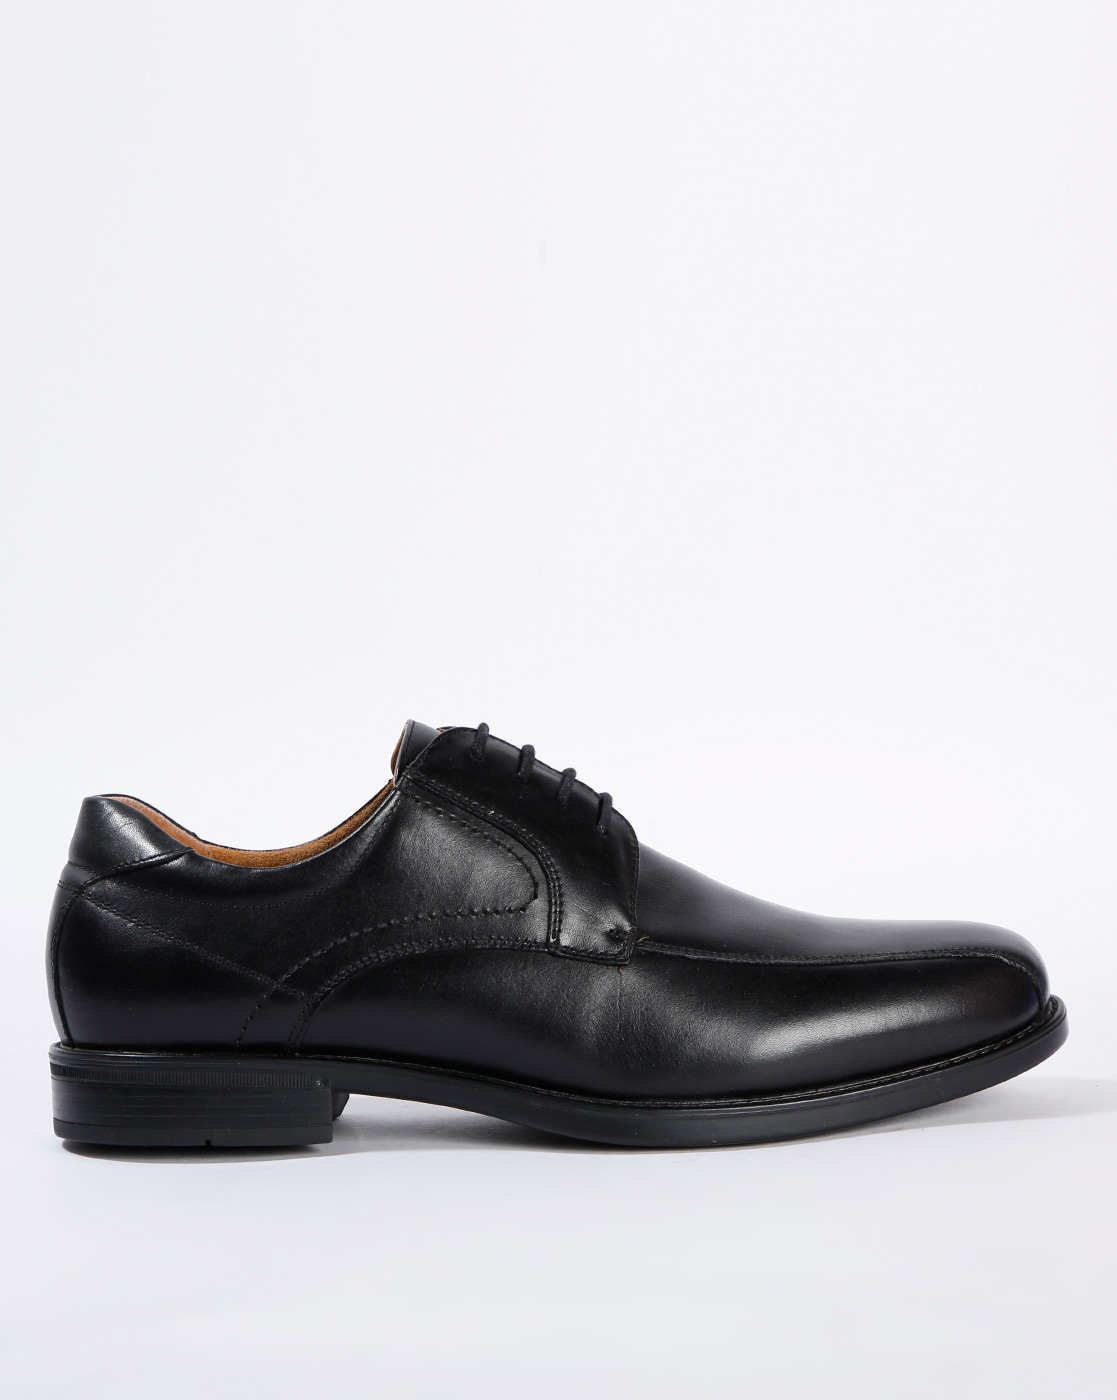 florsheim black shoes